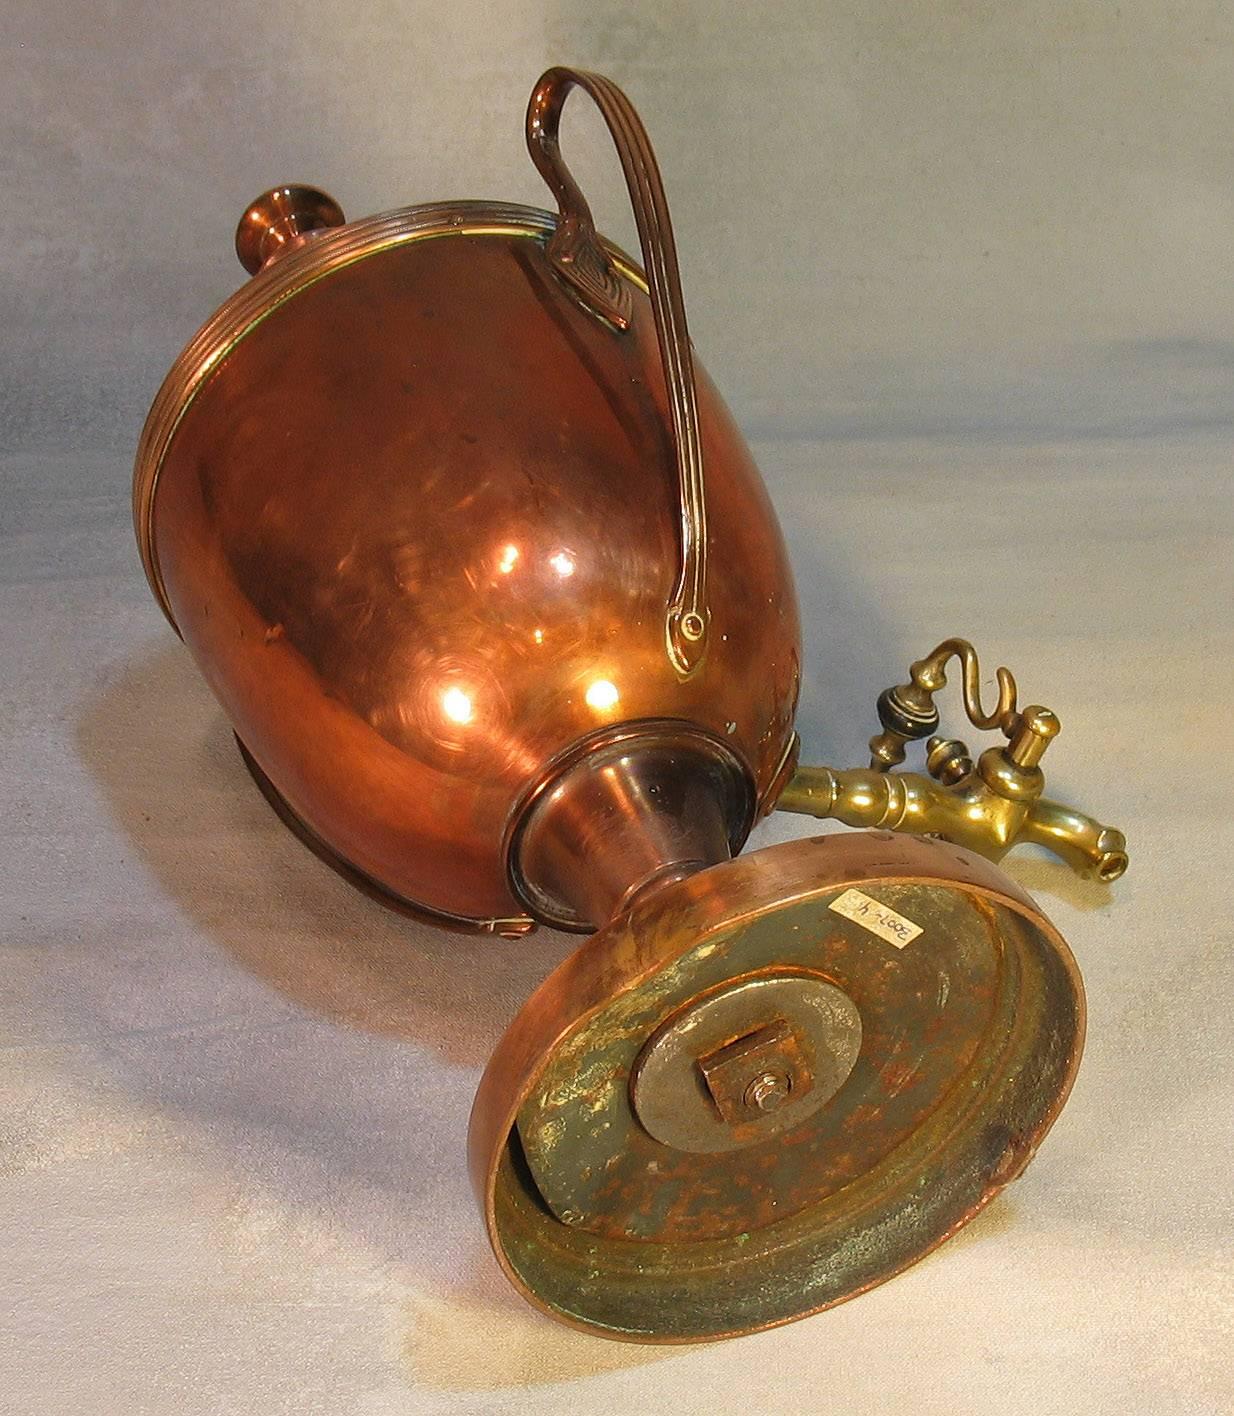 Brass Victorian Copper Hot Water Urn, Paris Exhibition 1855 Medal Winner Design